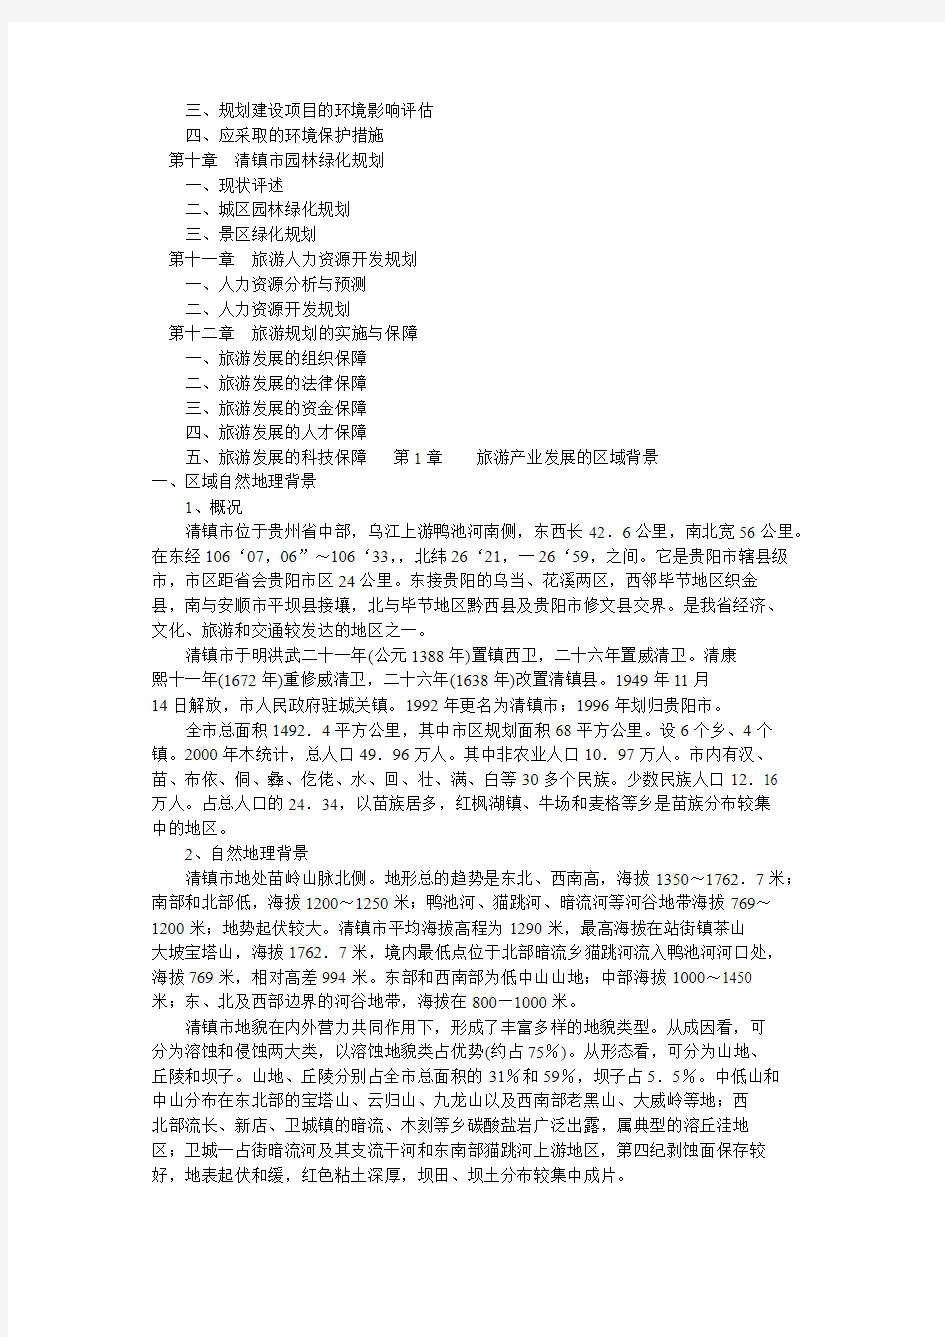 清镇市旅游发展总体规划说明书2002版